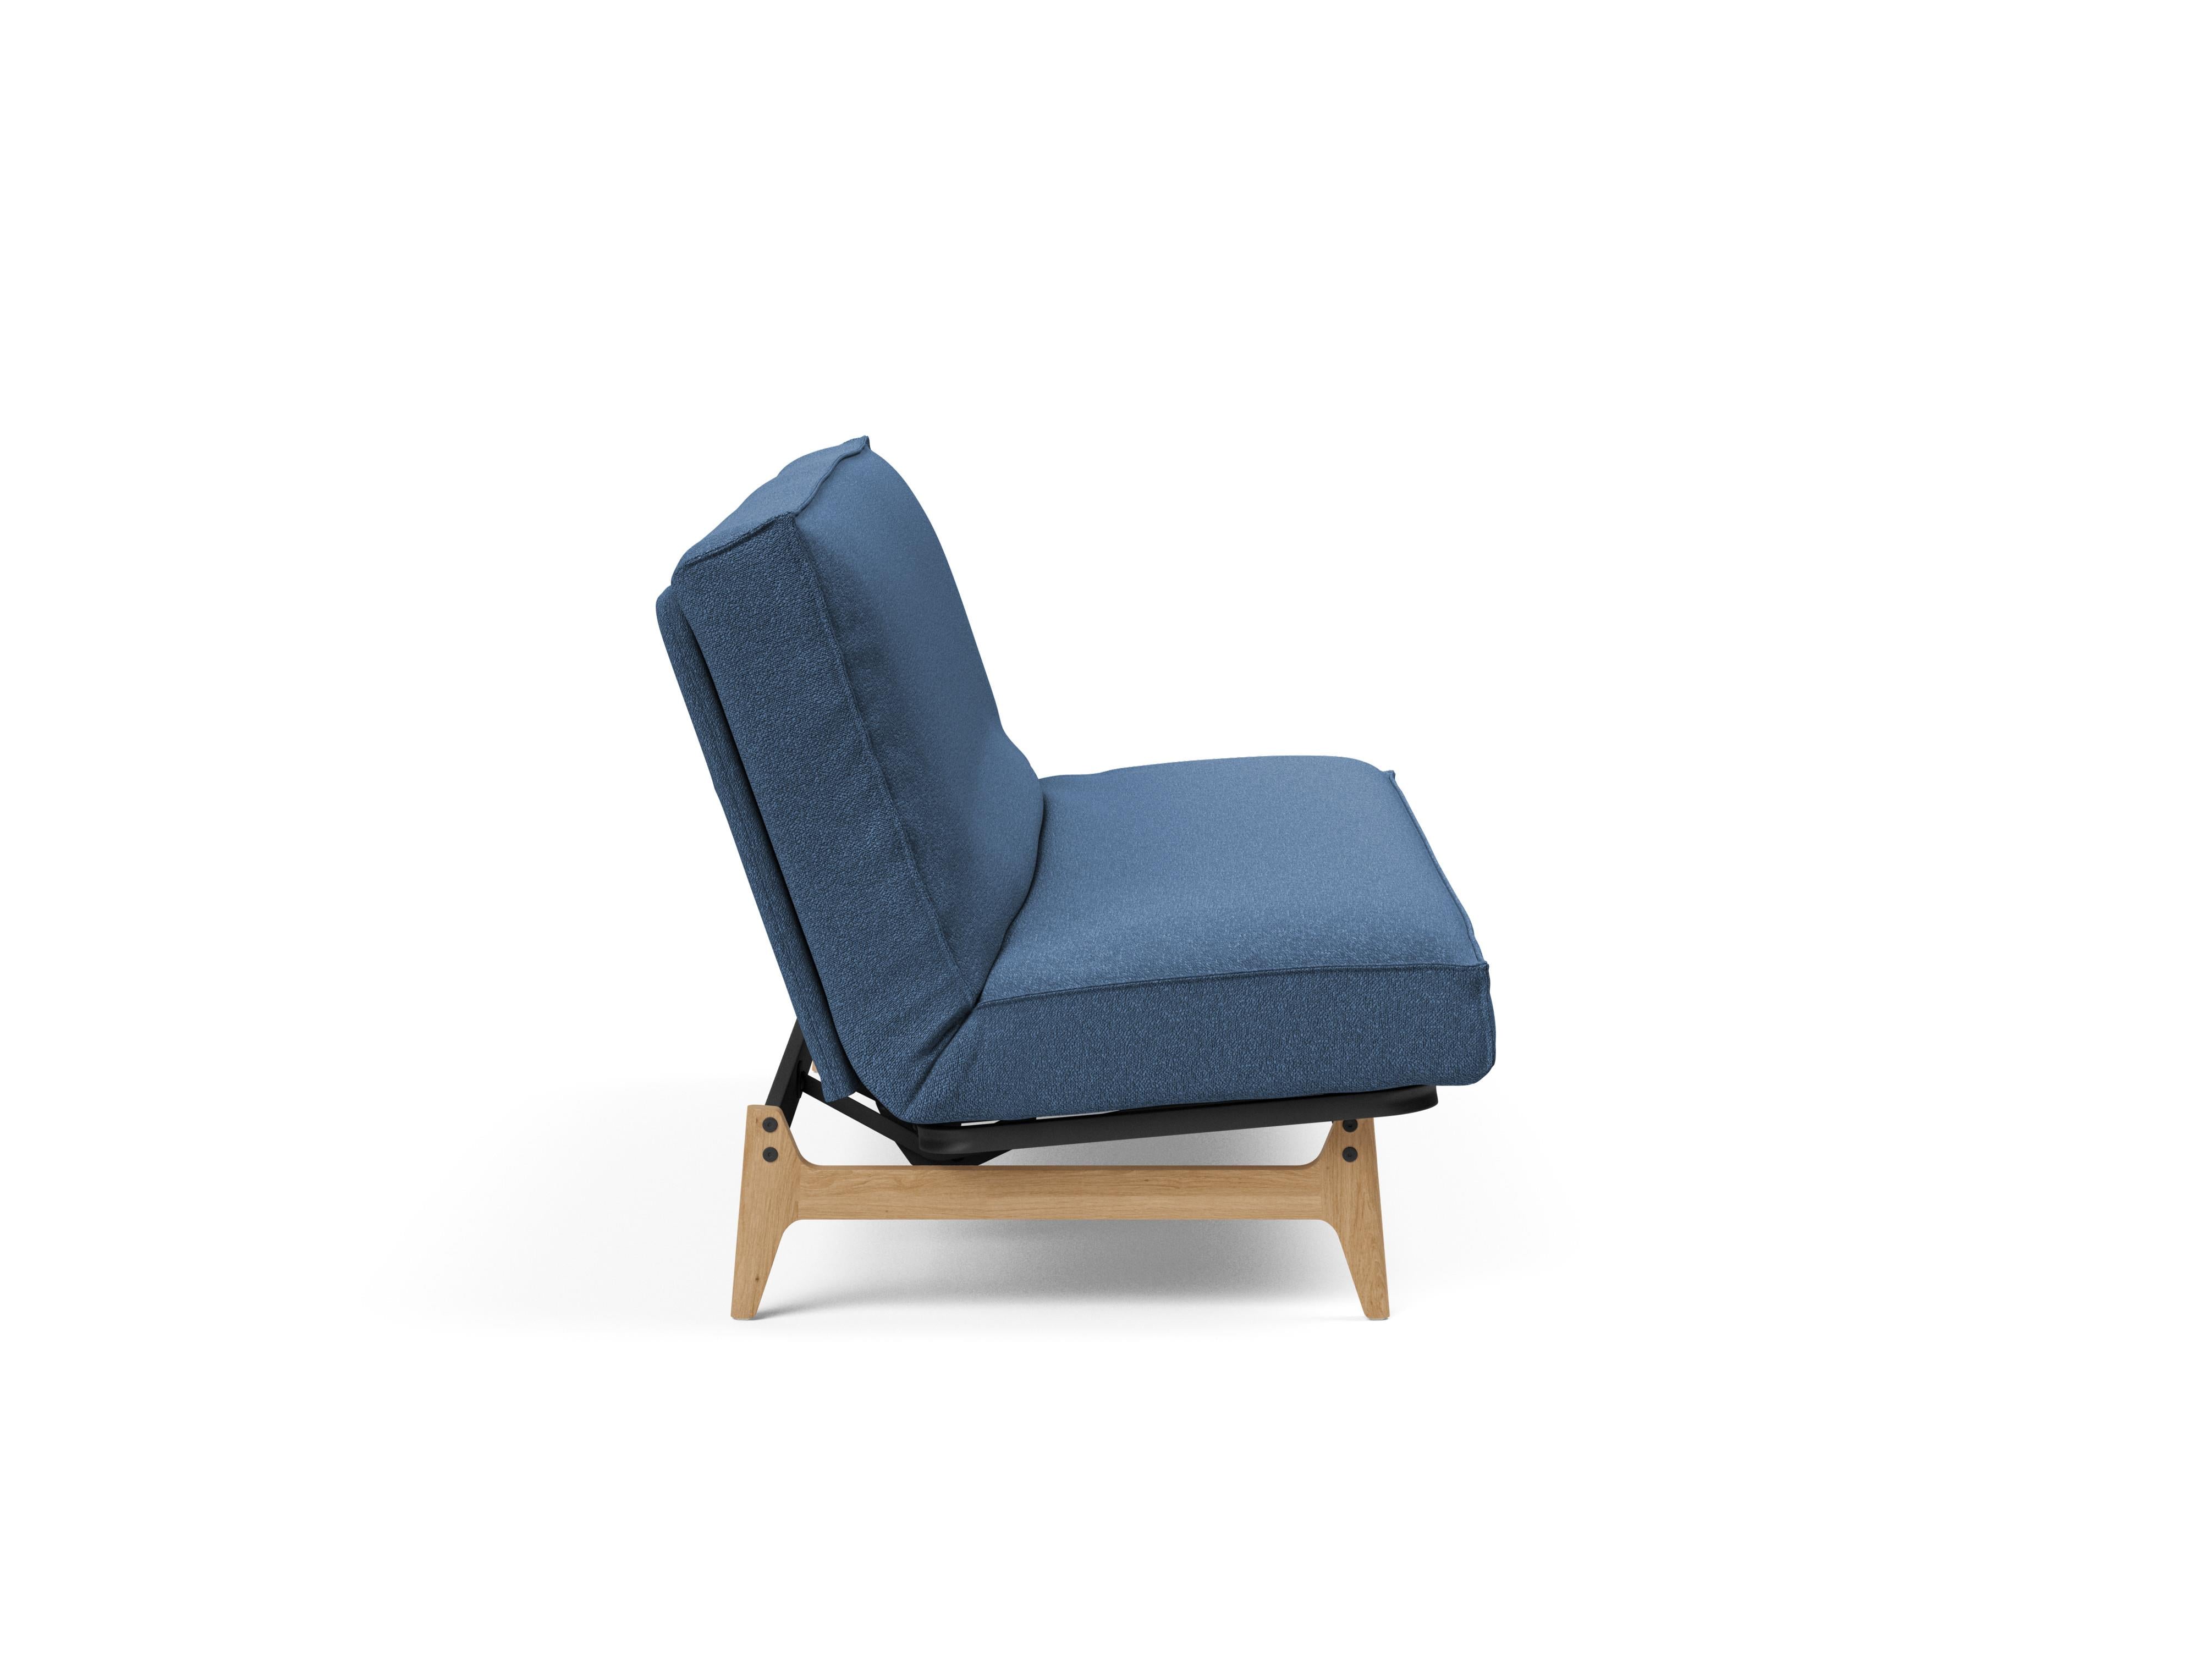 Aslak 140 Bettsofa Sharp Plus Cover in Blau 537 präsentiert im Onlineshop von KAQTU Design AG. Bettsofa ist von Innovation Living